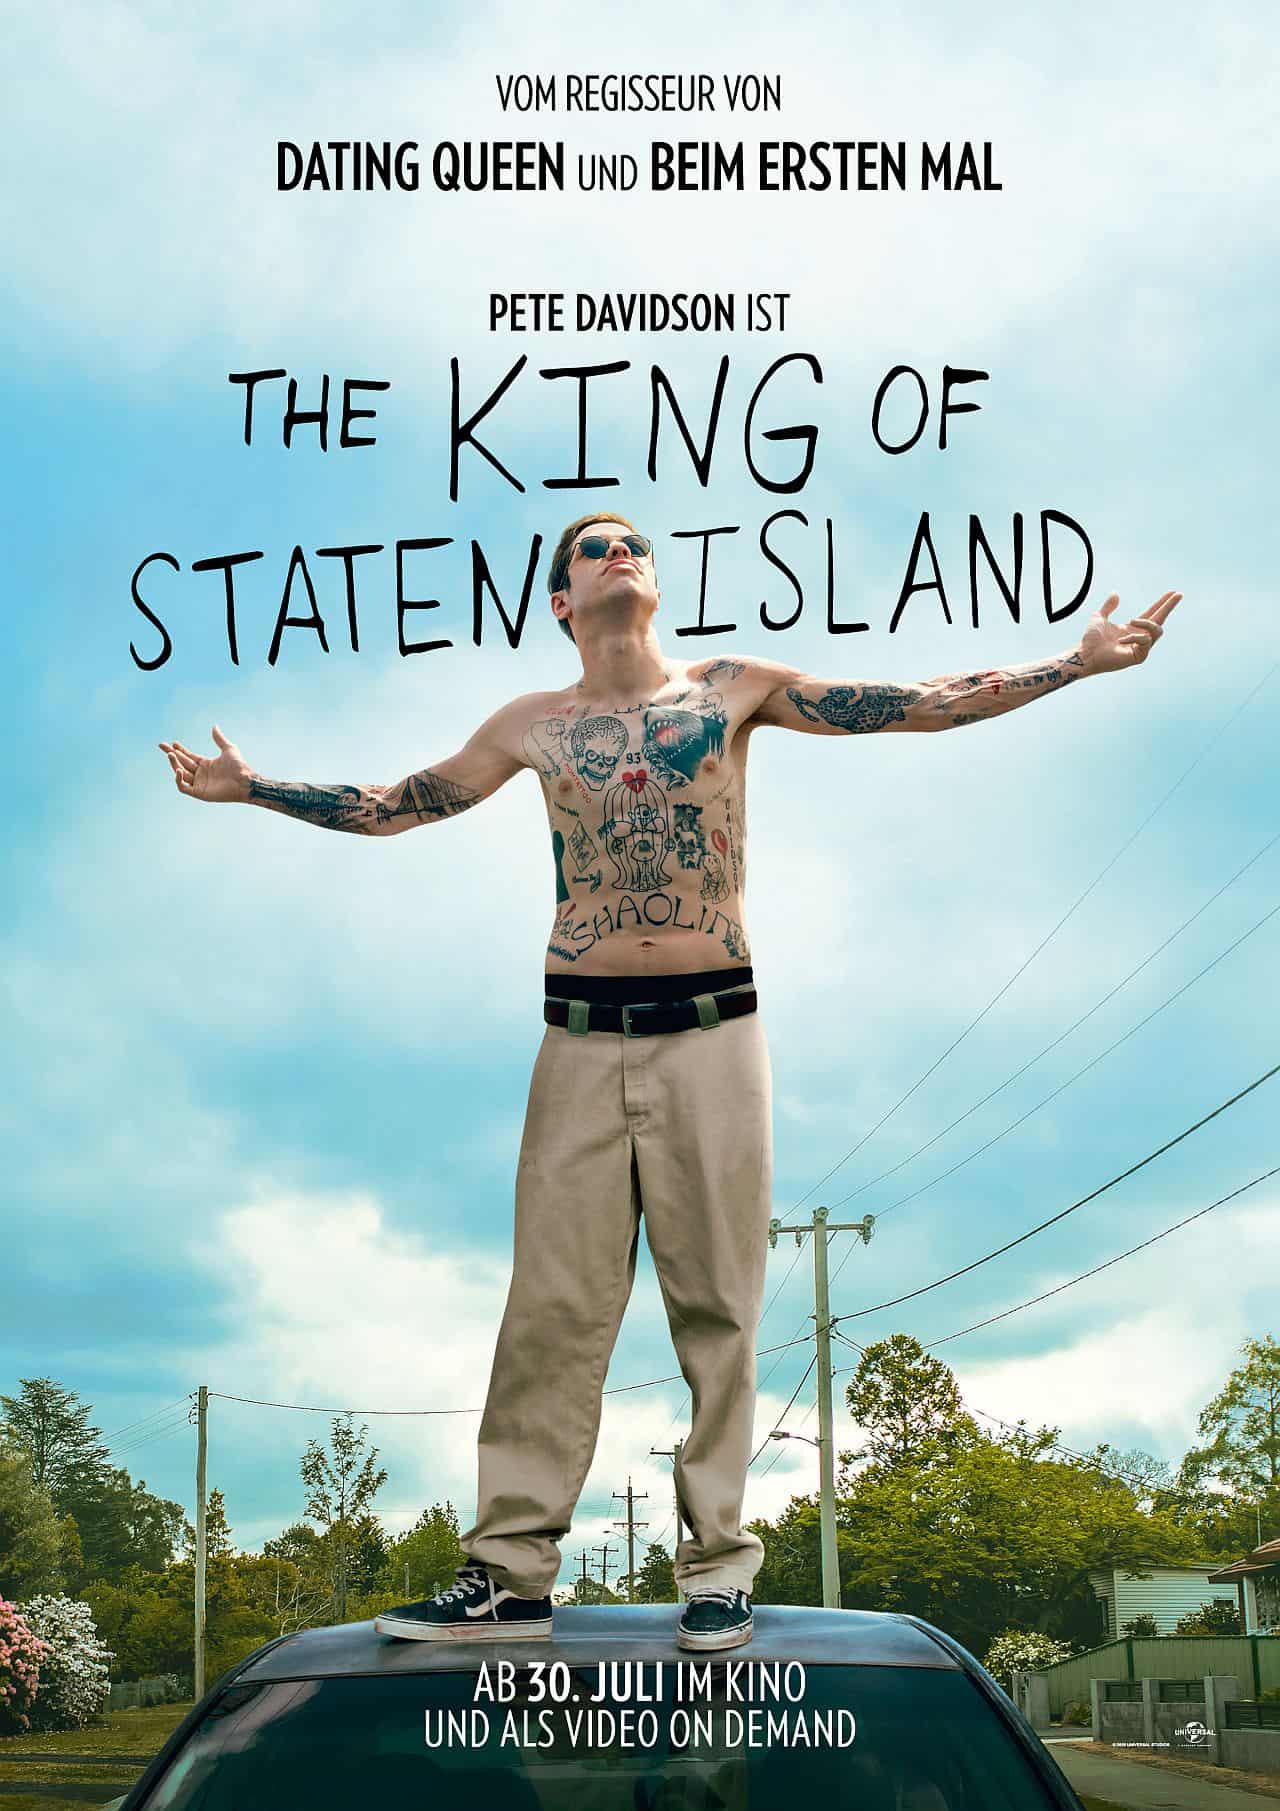 The King of Staten ISland ist eine neue Judd Apatow Komödie. Bekannt für derben Humor, liefert er hier 137 Minuten Film über einen lustlosen Typen, der keinesfalls langweilt.